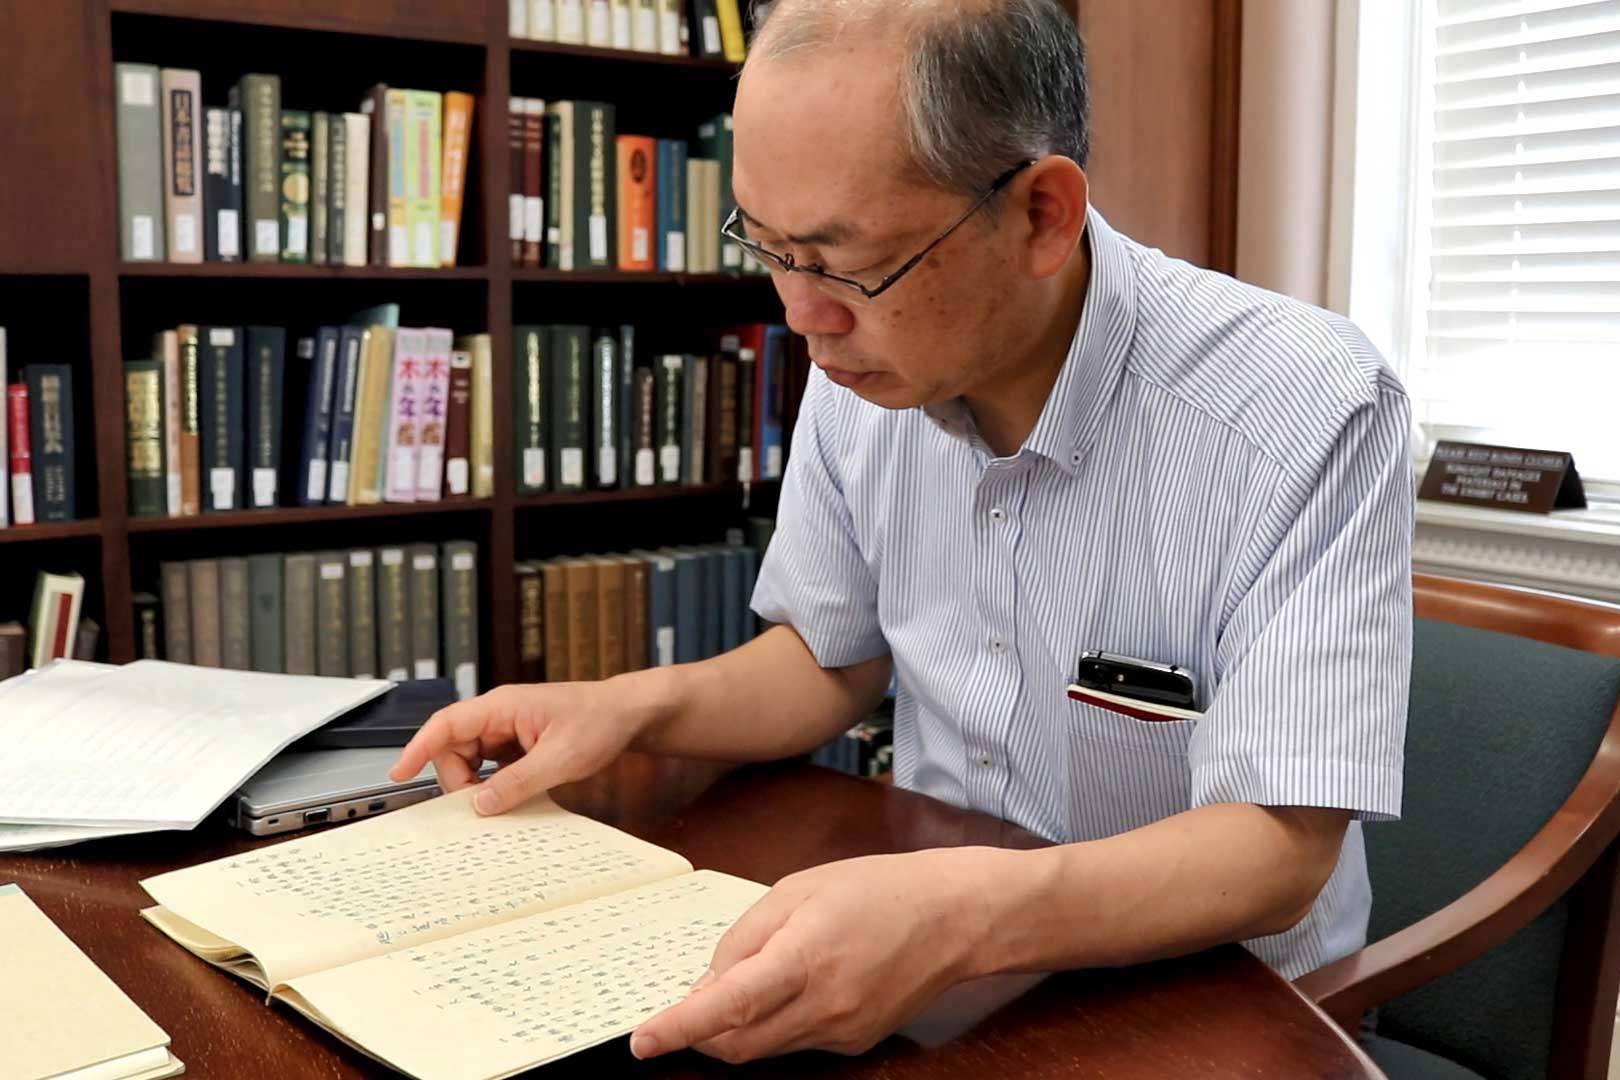 山田雄司教授曾遠赴美國調查關於忍者的國際文獻史料。